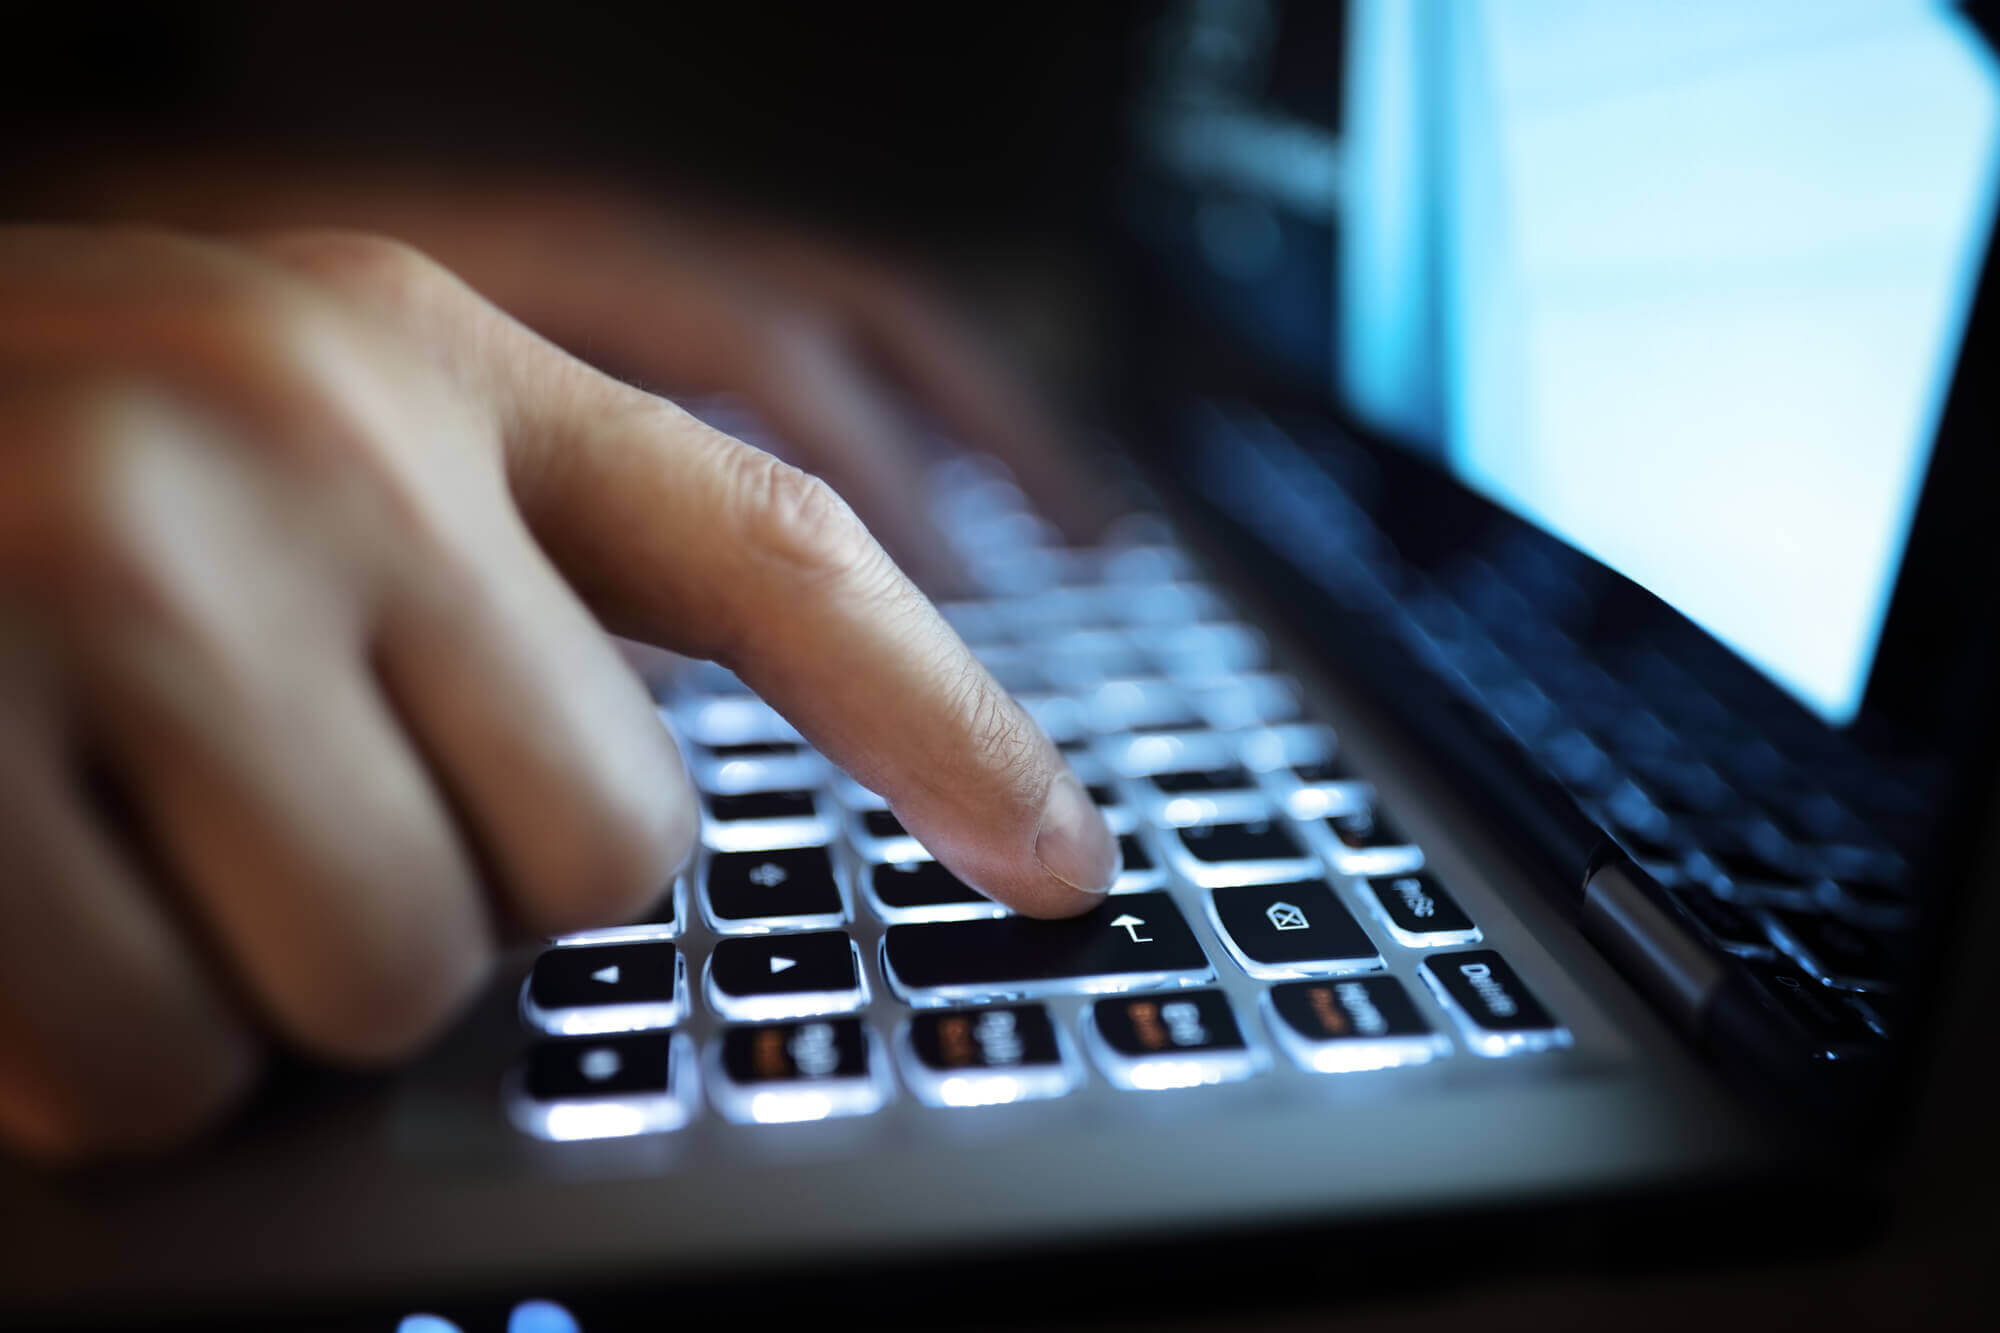 Pessoa utilizando computador interagindo com teclado